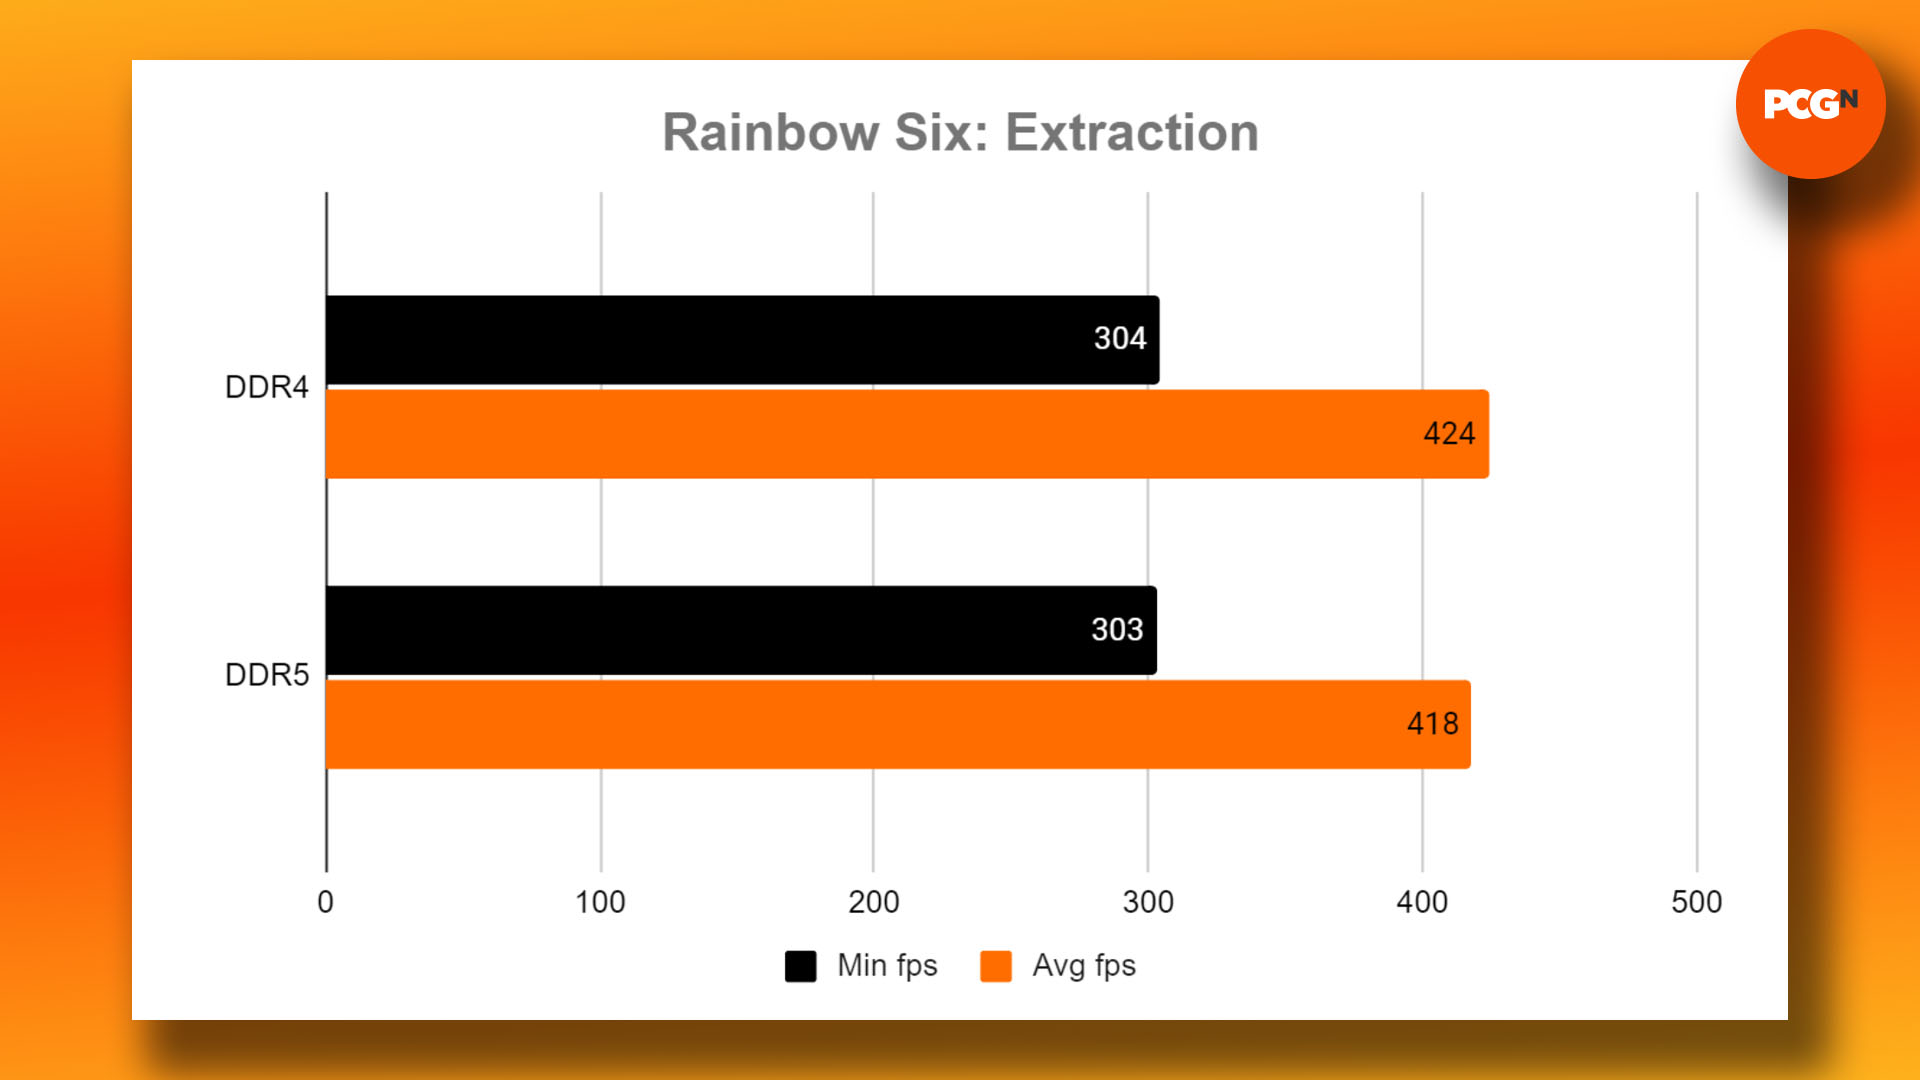 DDR4 vs DDR5 - oyun için hangi RAM satın alınmalı: Rainbow Six Extraction kıyaslama sonuçları grafiği